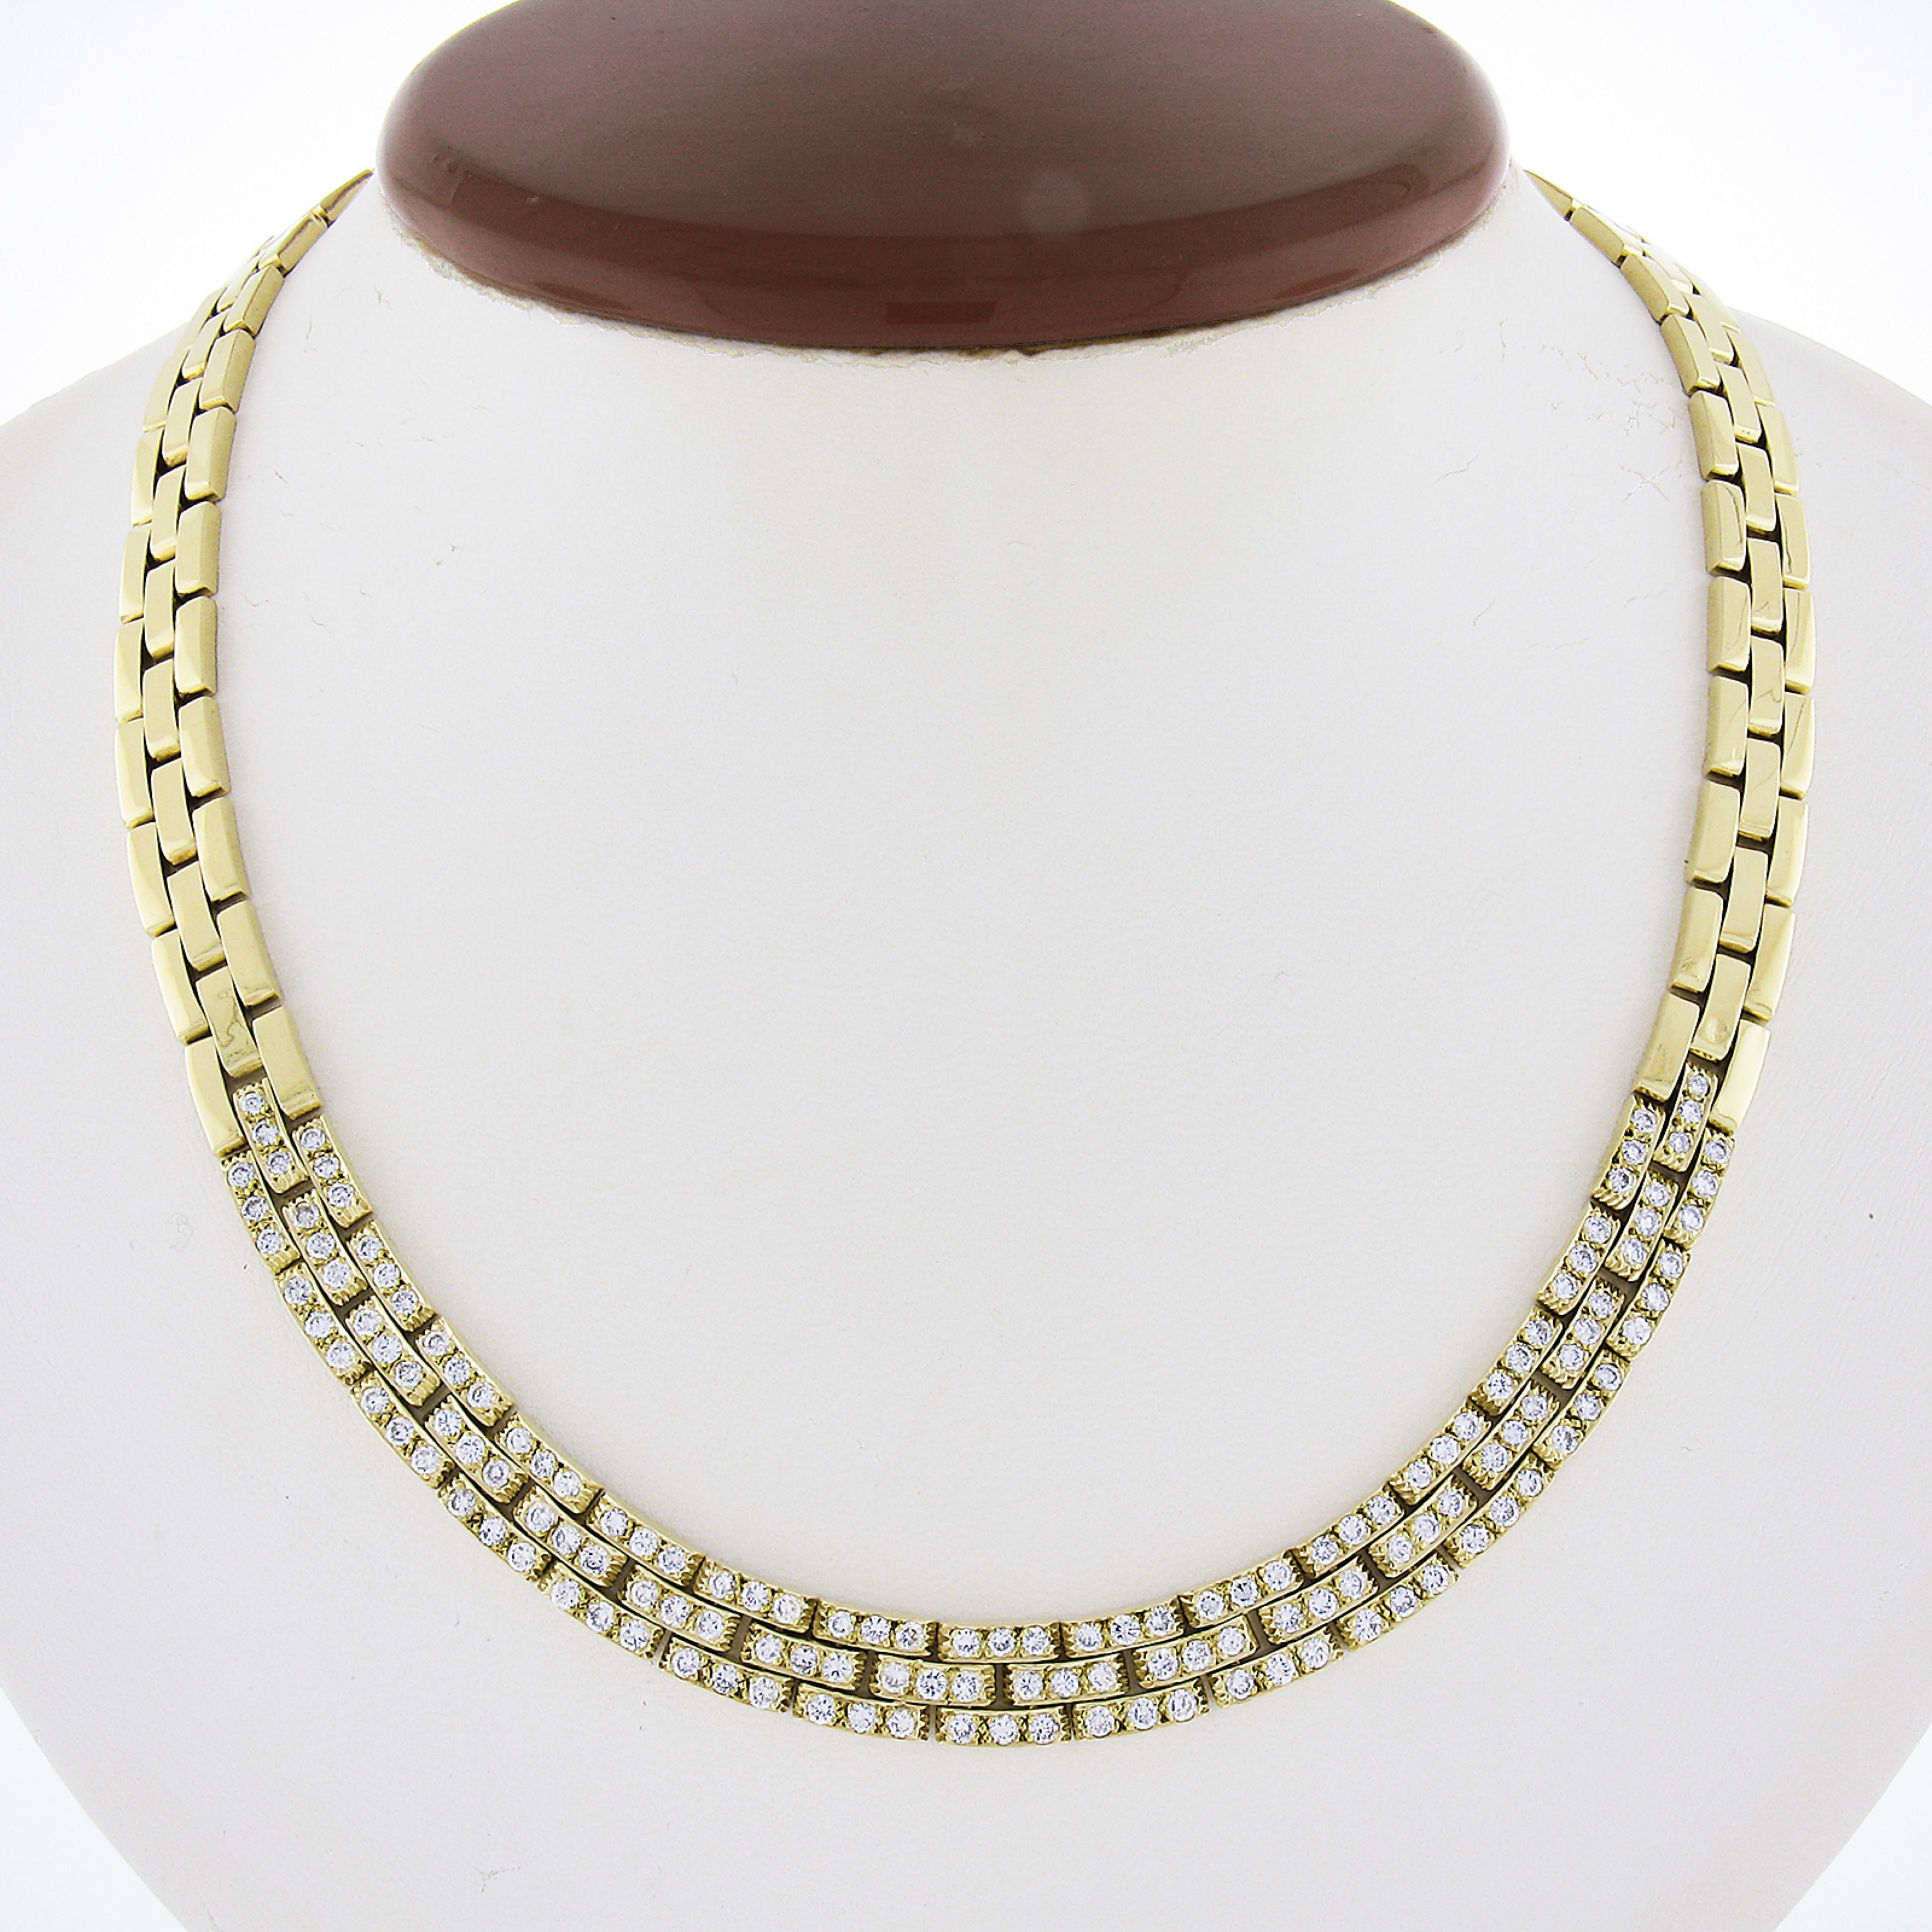 Sehr solide und gut gemacht 18k Gold Halskette mit herrlichen Hand pave Arbeit, die die Vorderseite der Halskette. 138 perfekte Diamanten bedecken die Vorderseite der Halskette, während der Rest poliert ist, um das üppige 18k Gelbgold zu zeigen!